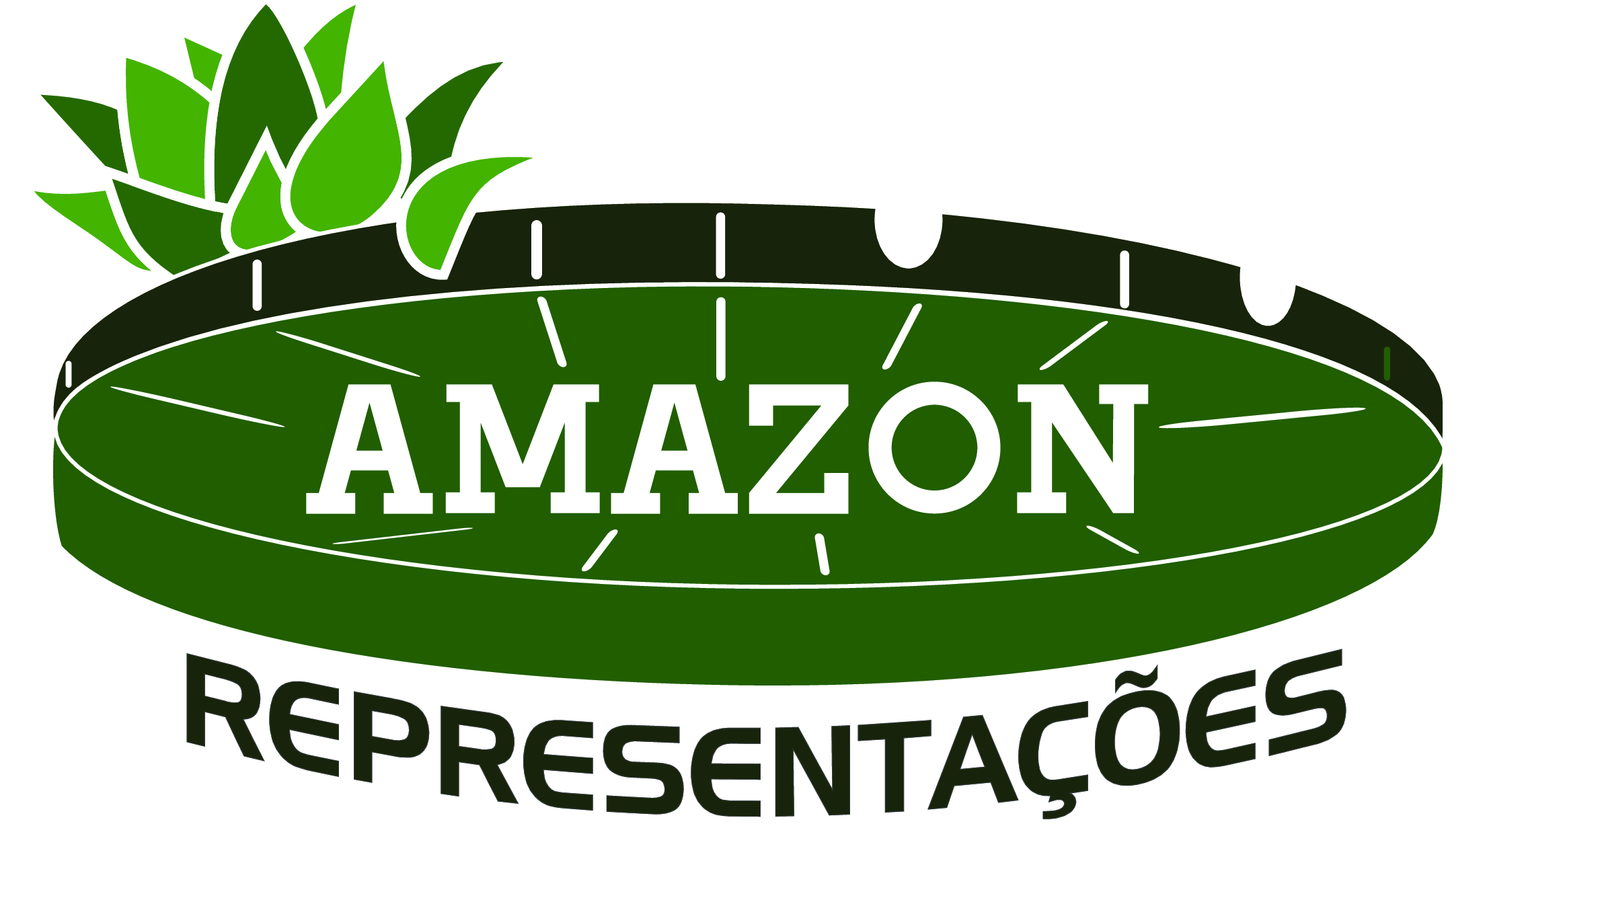 Amazon Representações